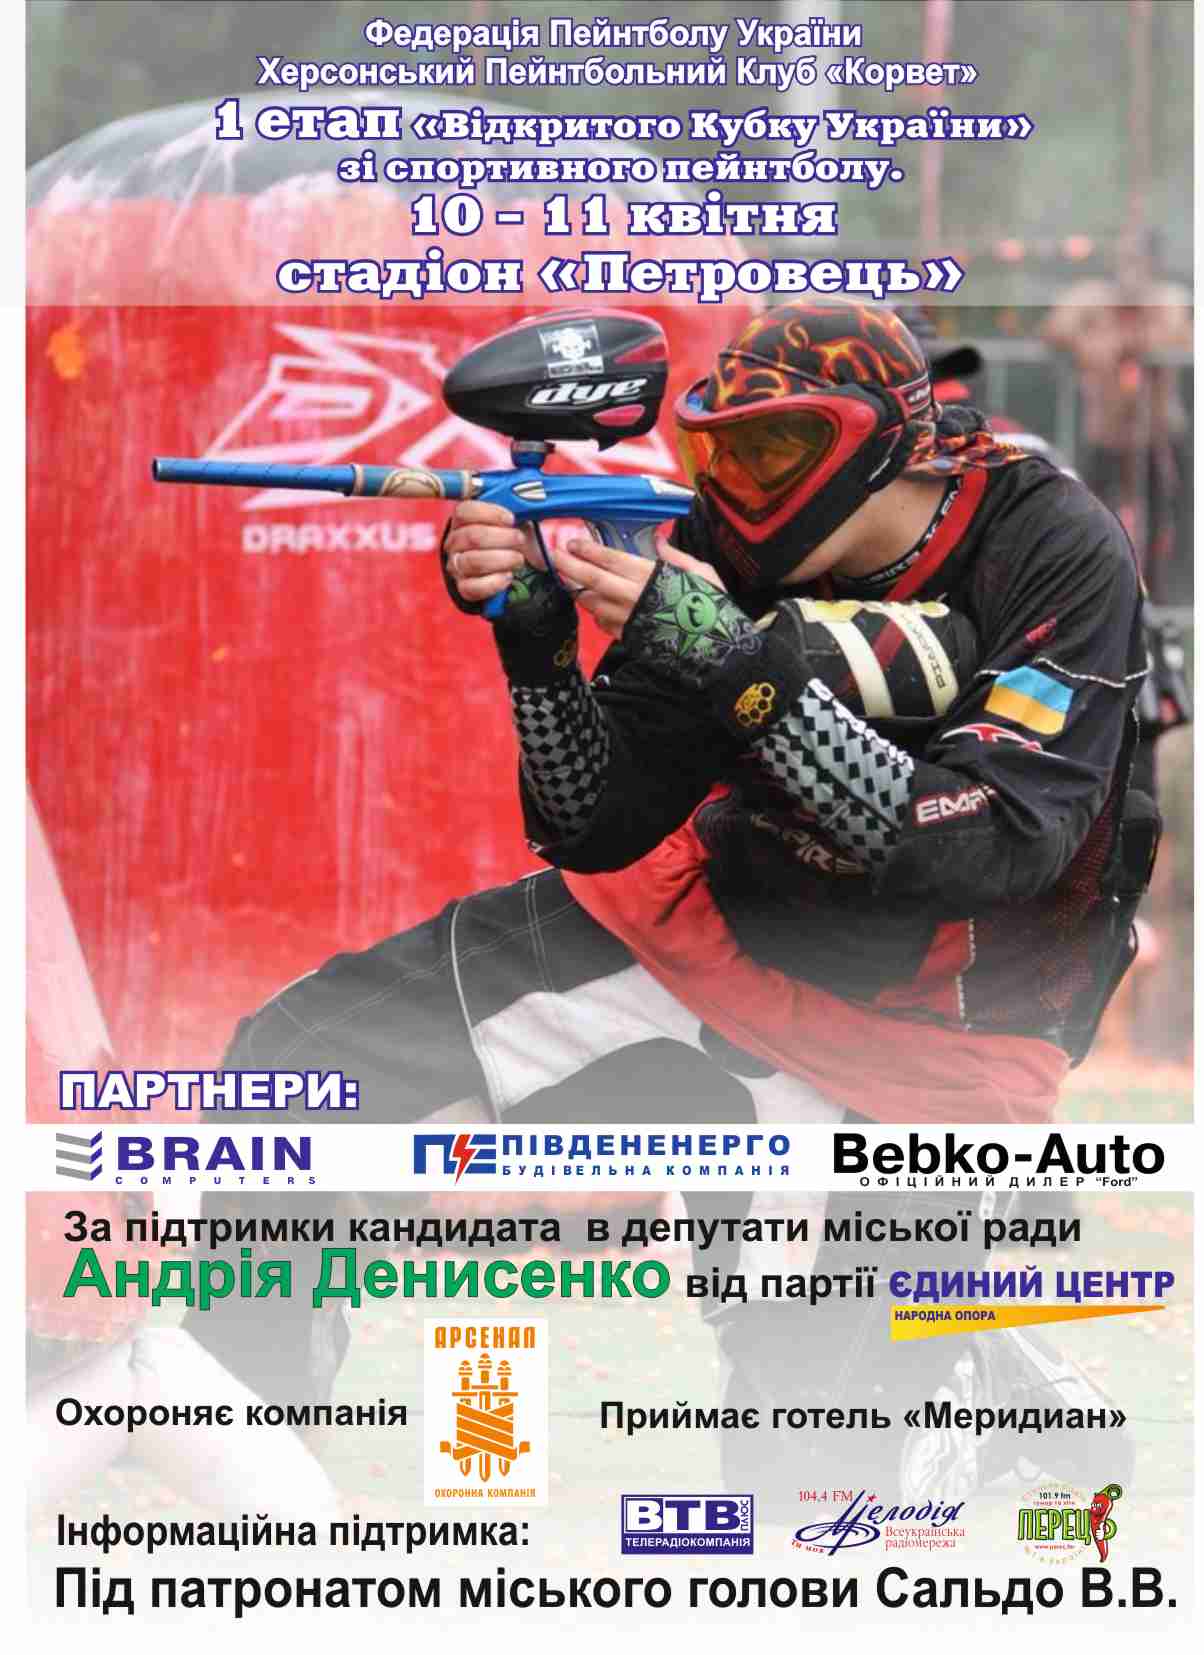 10-11 апреля 2010 г. 1-й этап Кубка Украины по пейнтболу